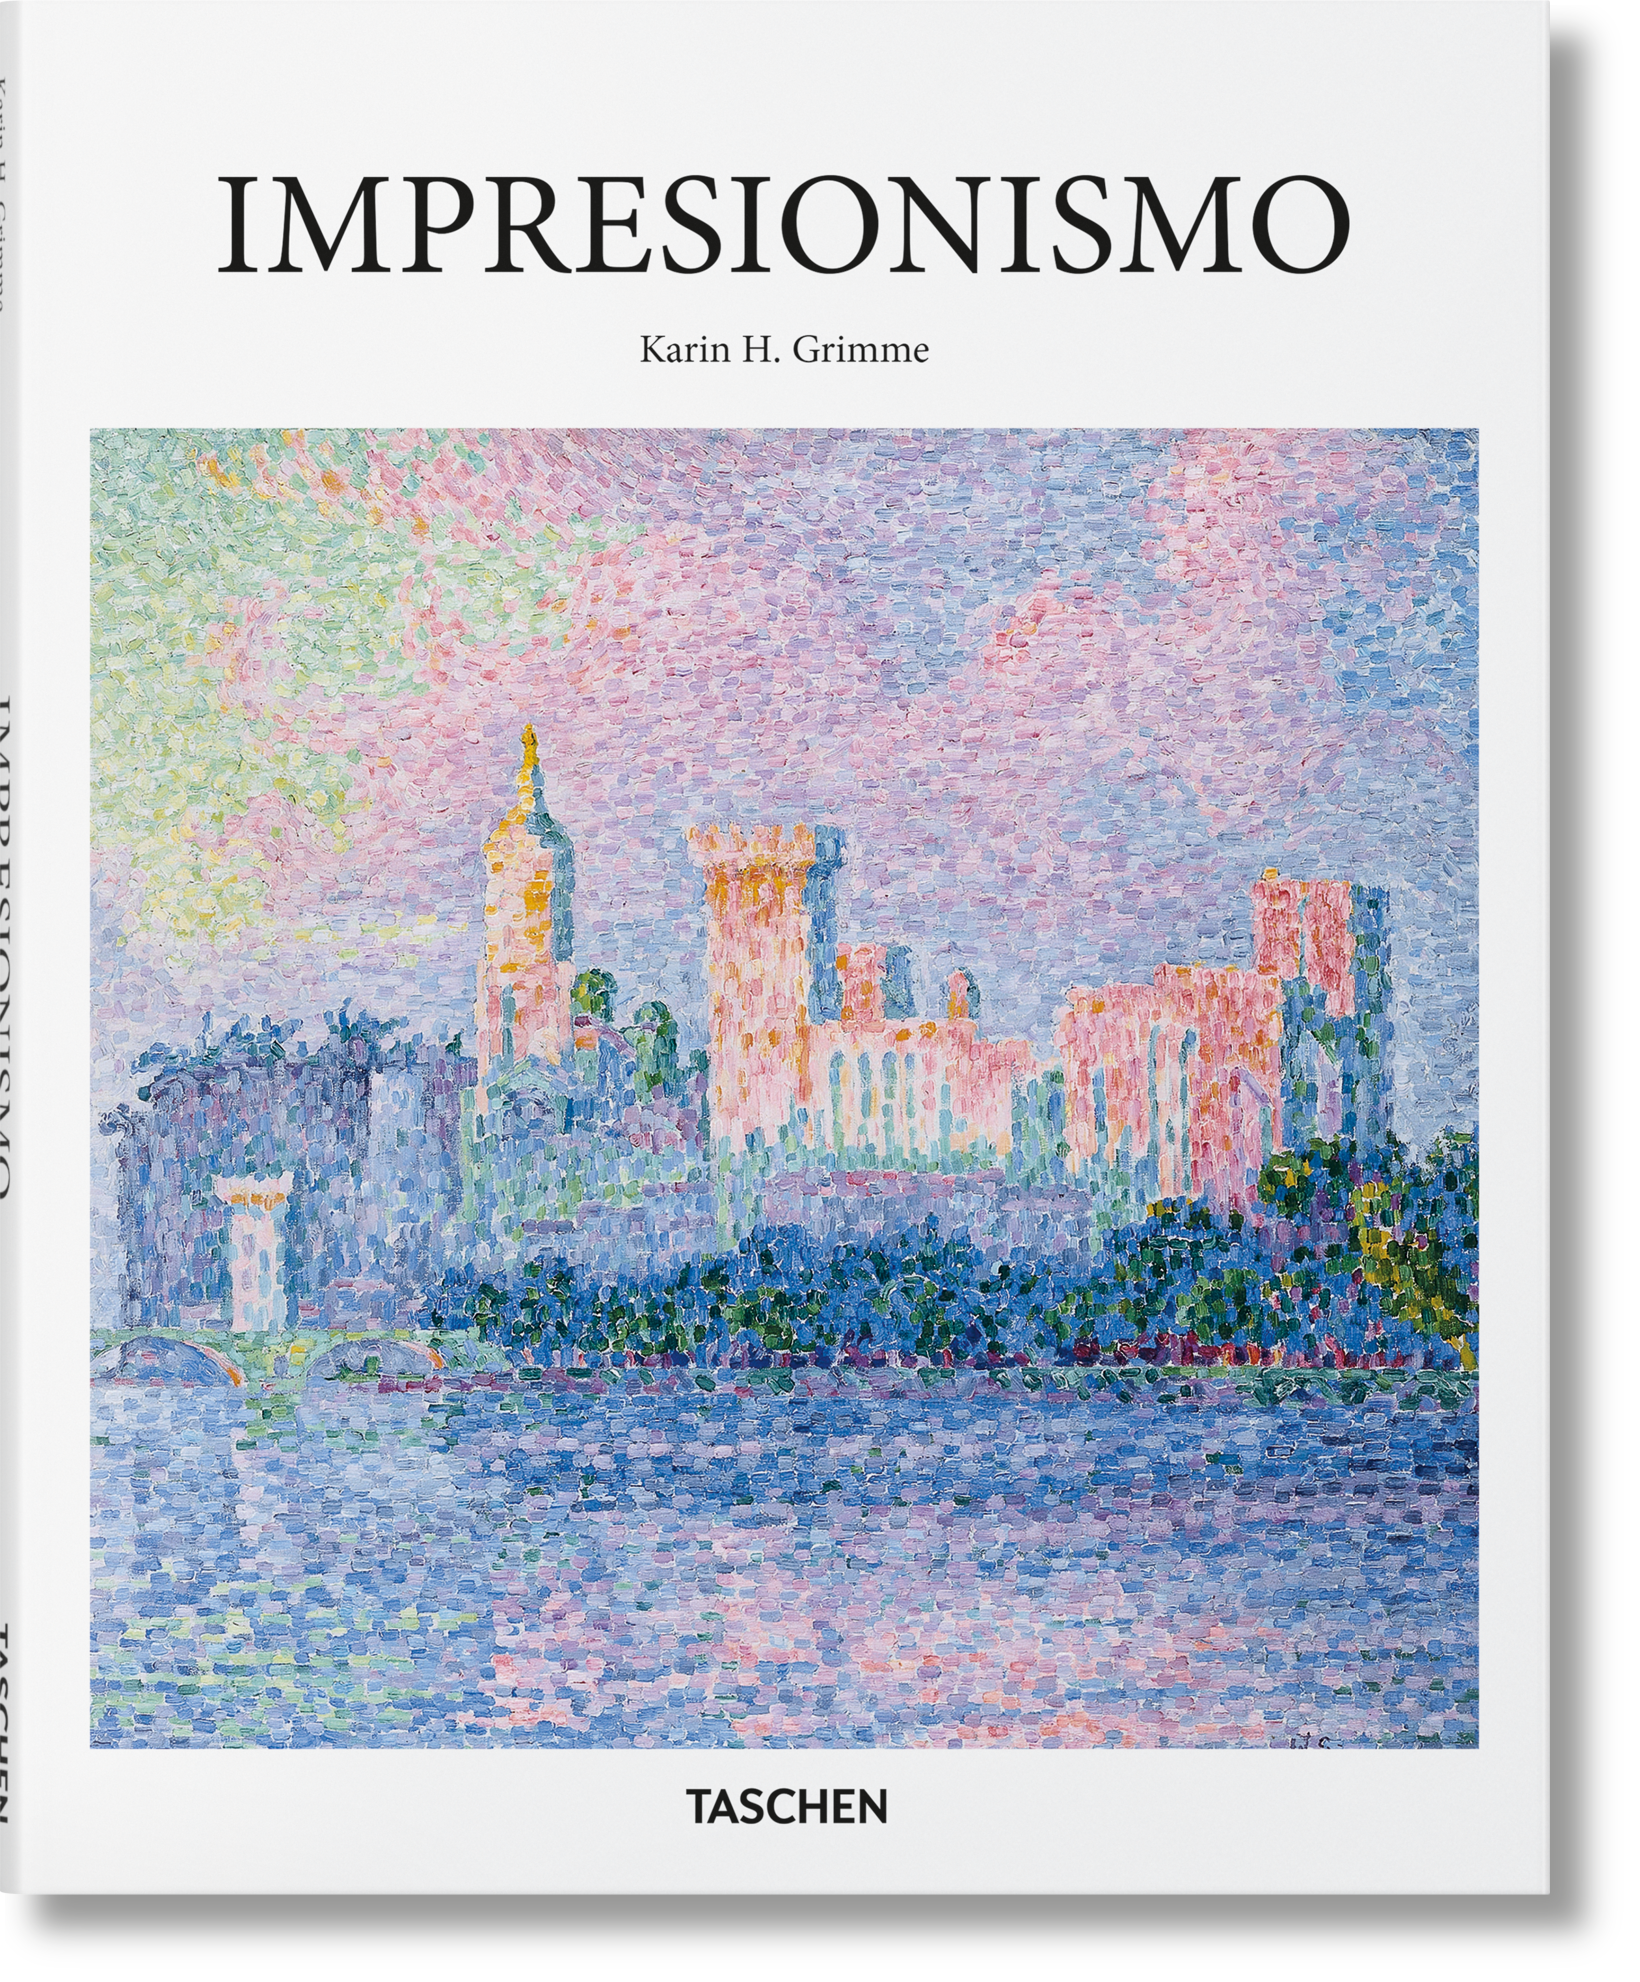 TASCHEN Books: Impressionism